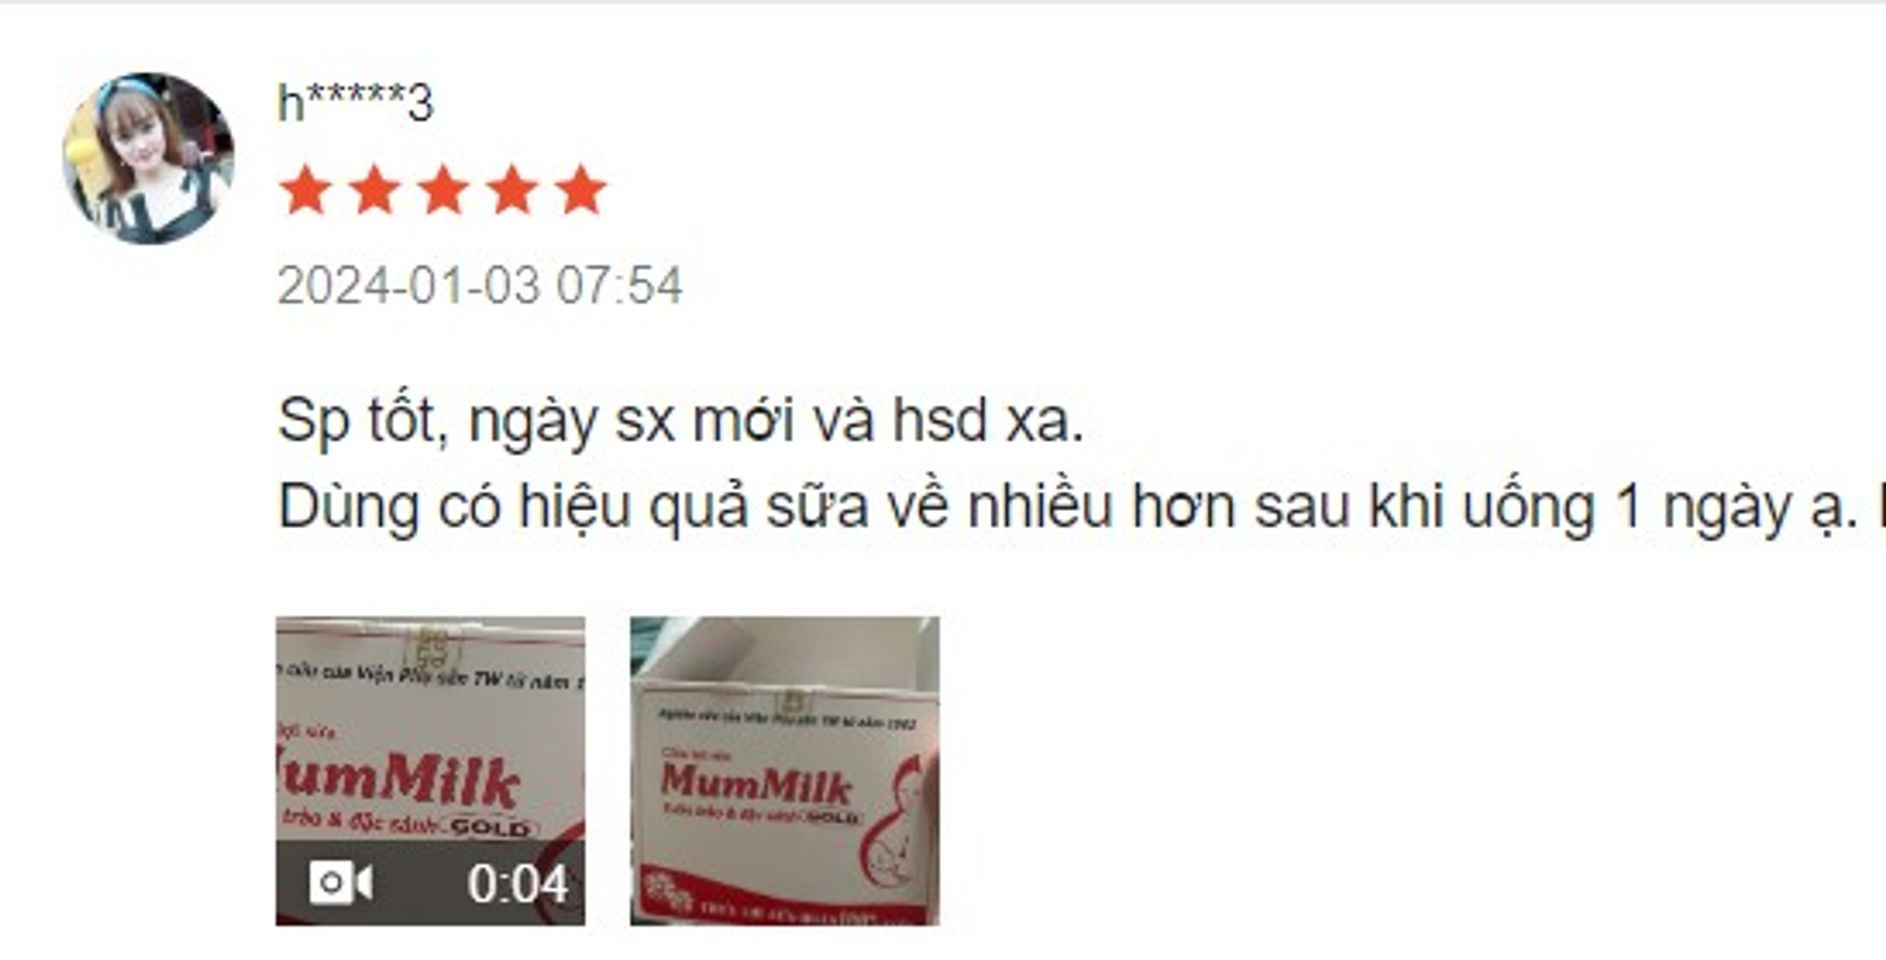 Review cốm lợi sữa Mummilk